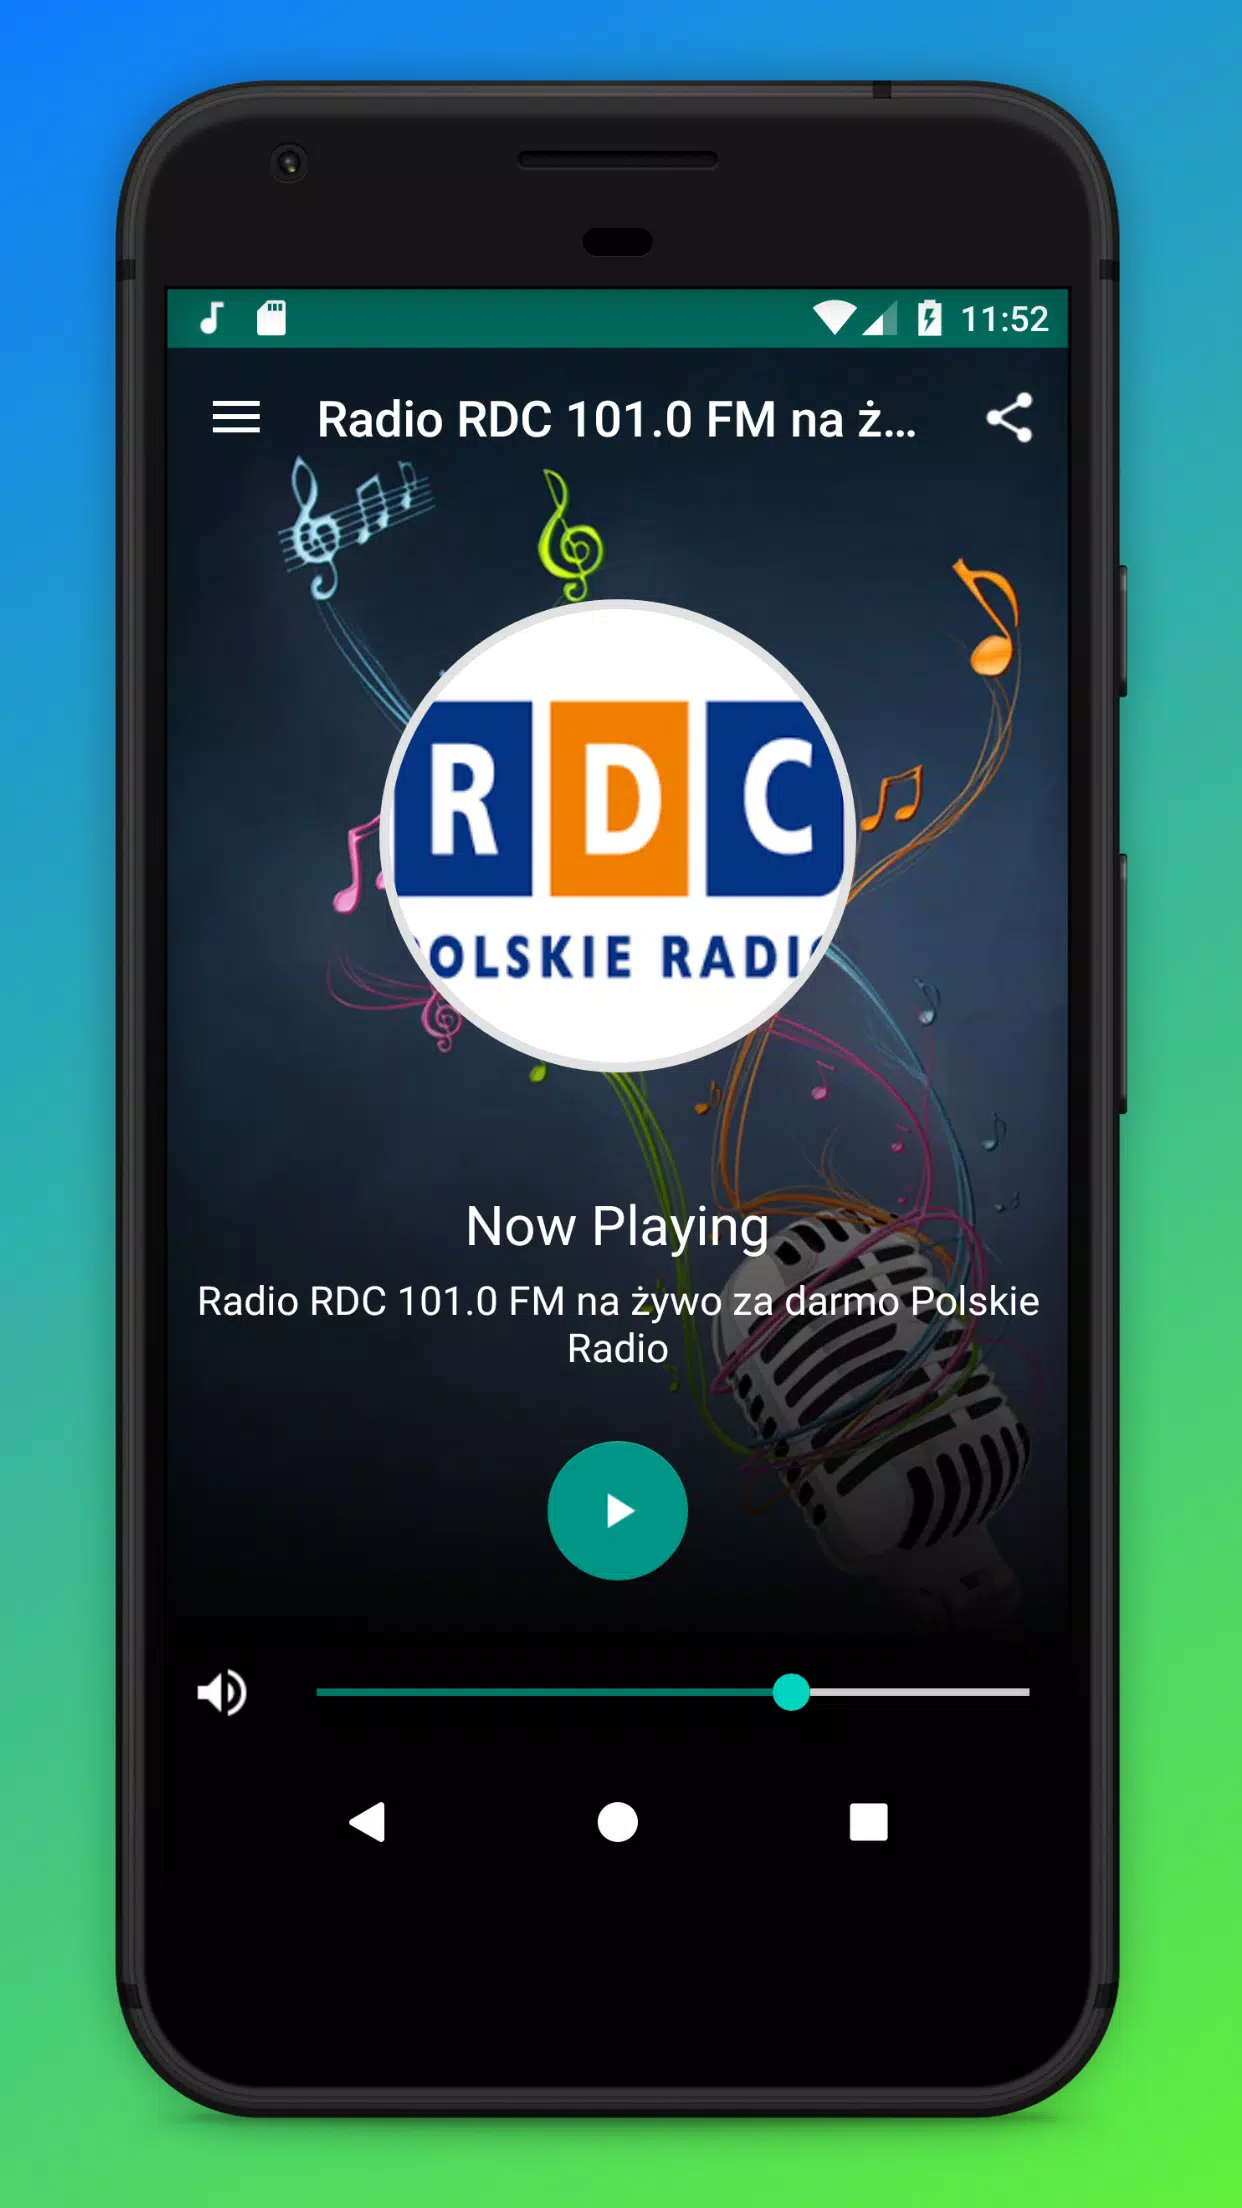 Radio RDC 101.0 FM na żywo za darmo Polskie Radio APK for Android Download